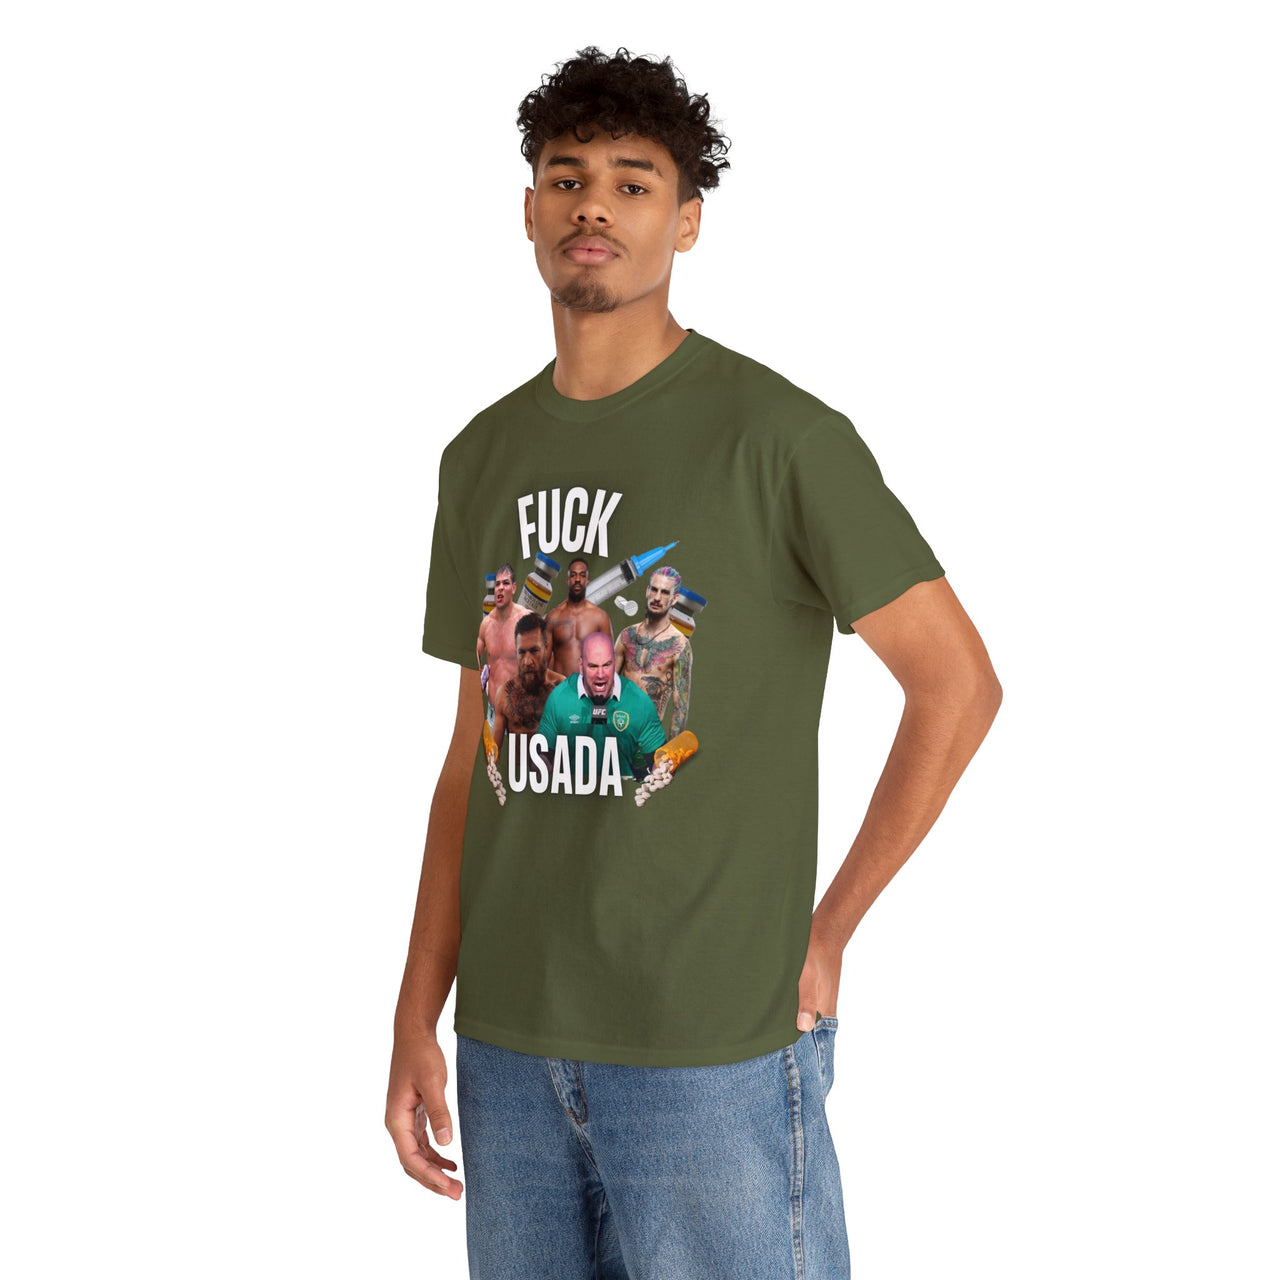 Fuck USADAS T-Shirt